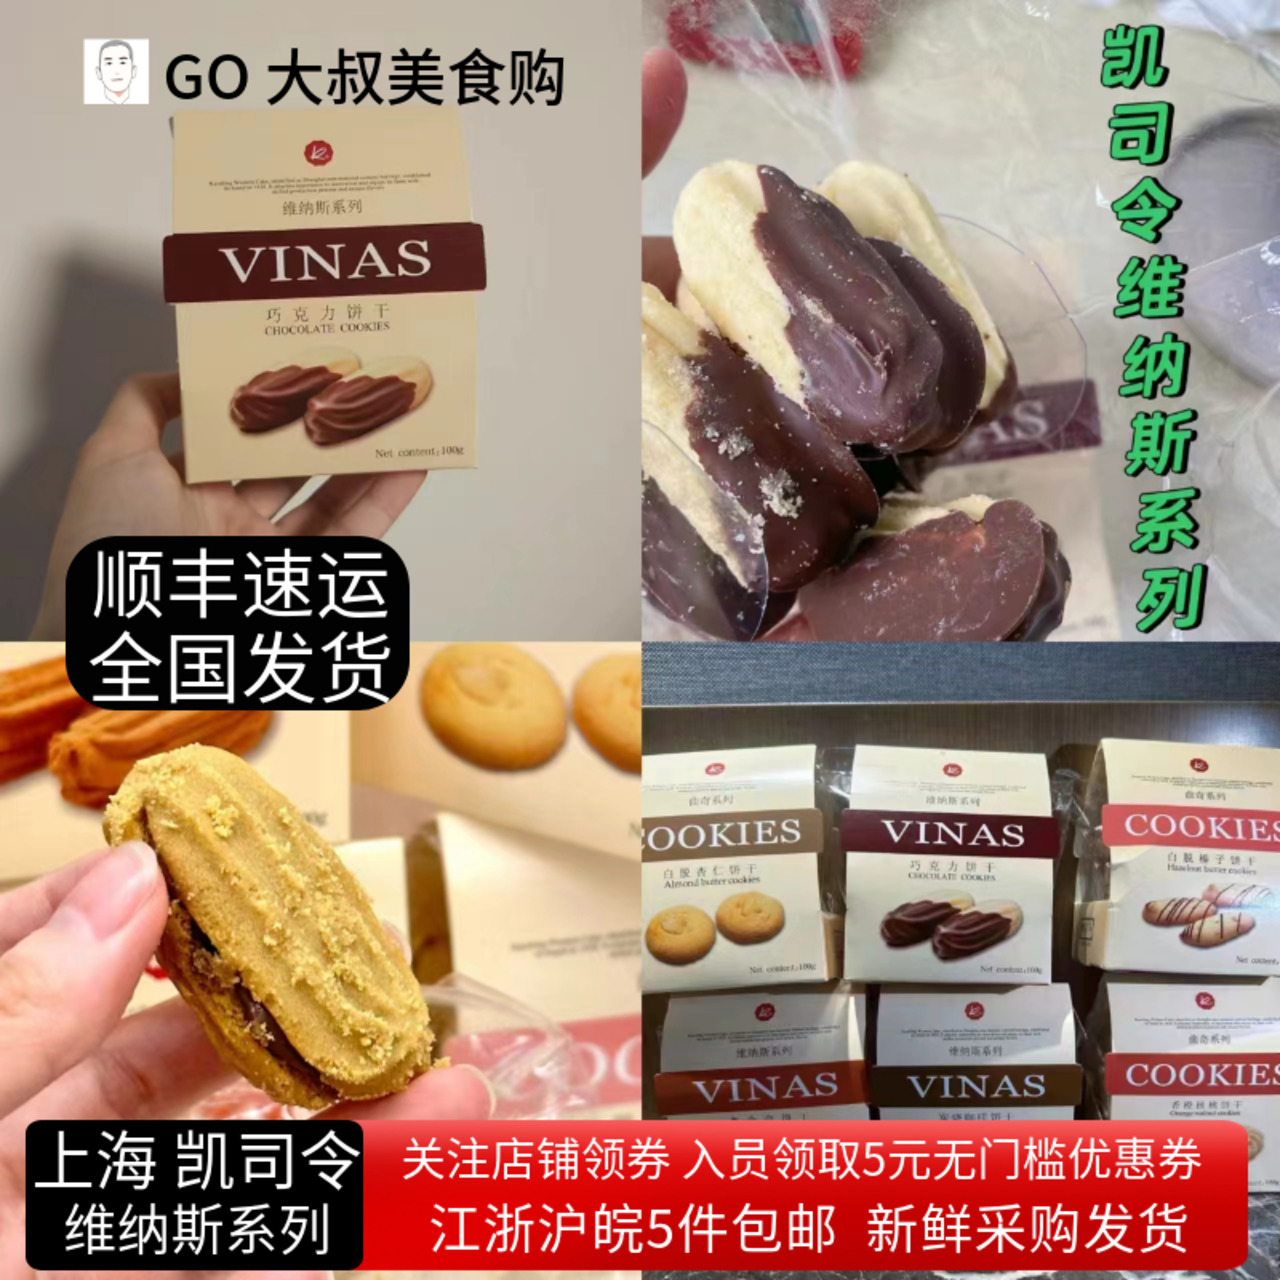 上海凯司令特色维纳斯系列饼干多口味老味道网红美食西式糕点茶点